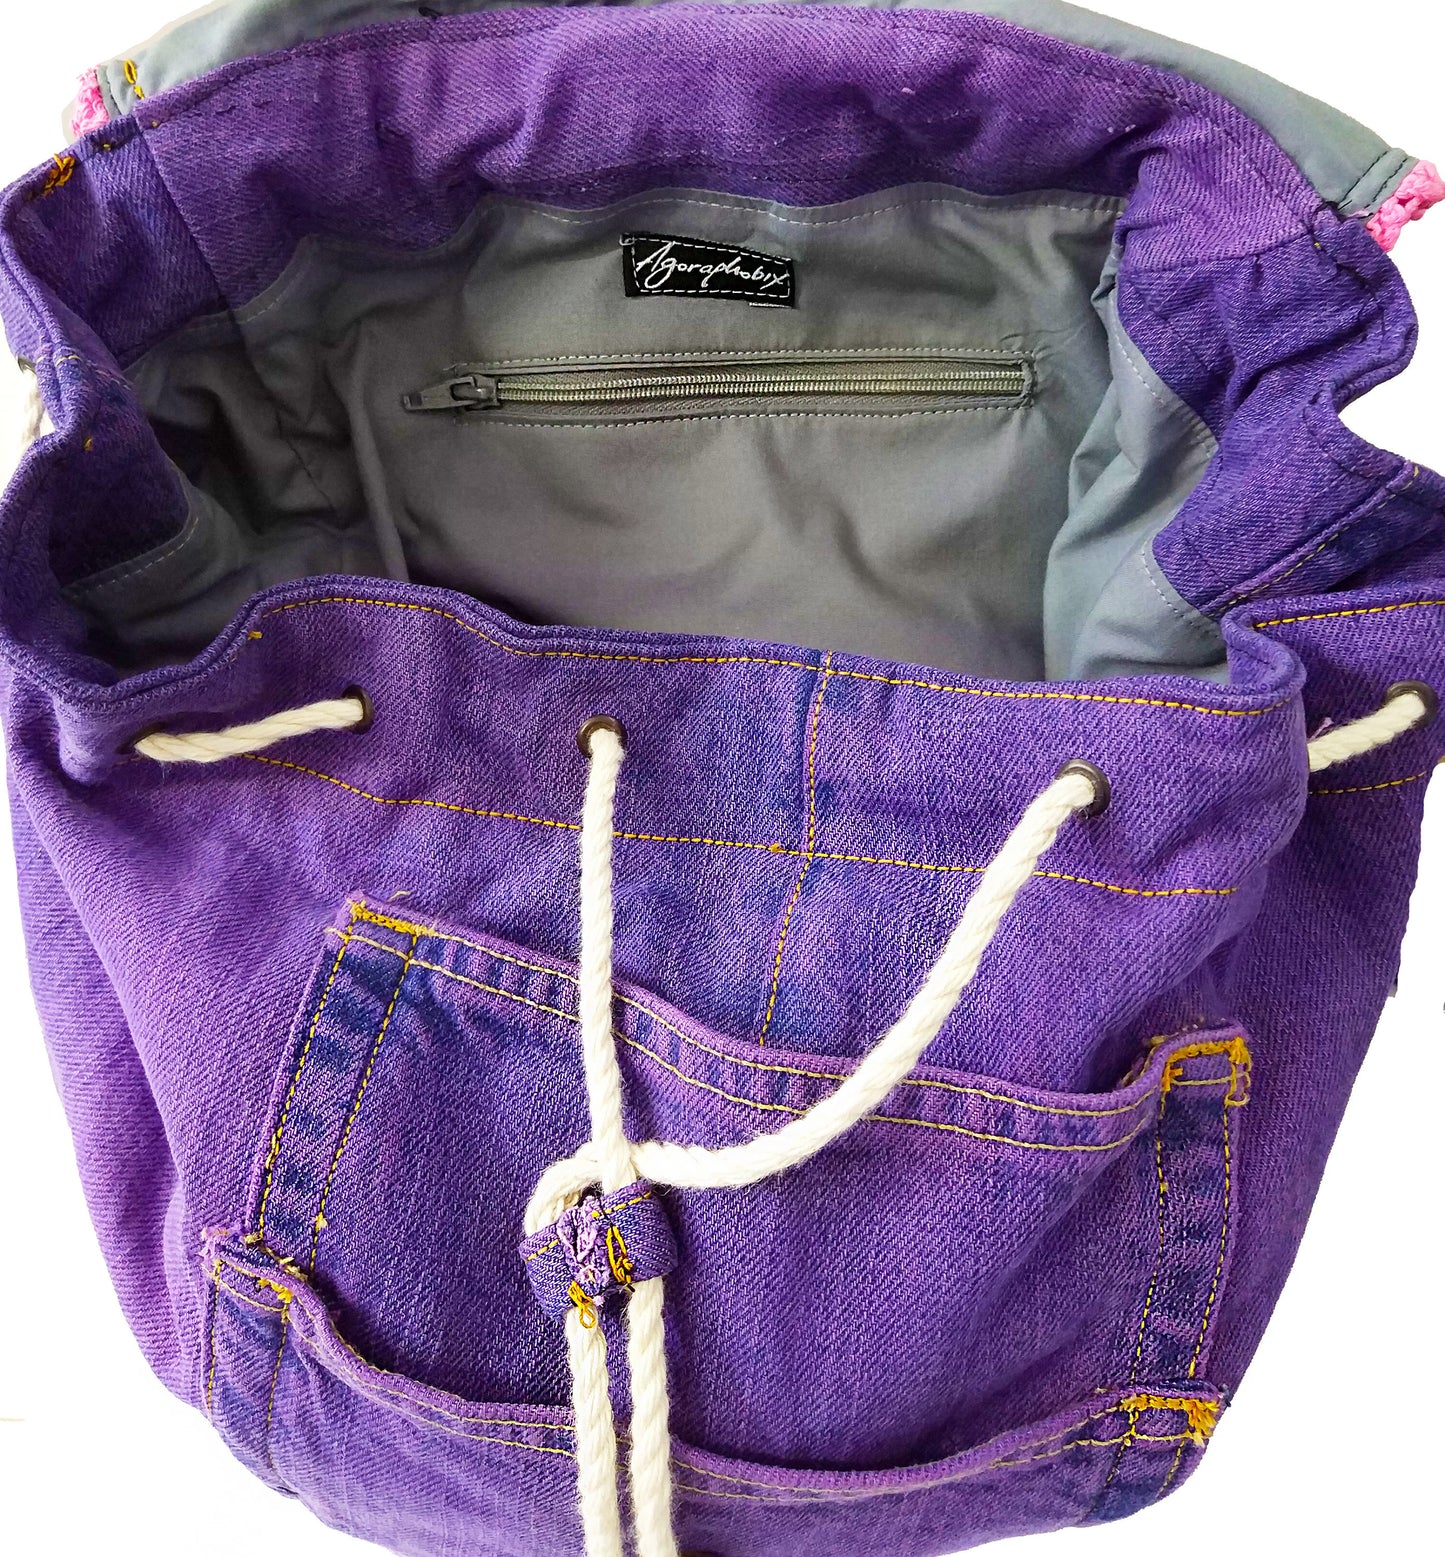 vegan bag upcycled My purple denim backpack jeans bag | daypack backpack | Canvas Backpack